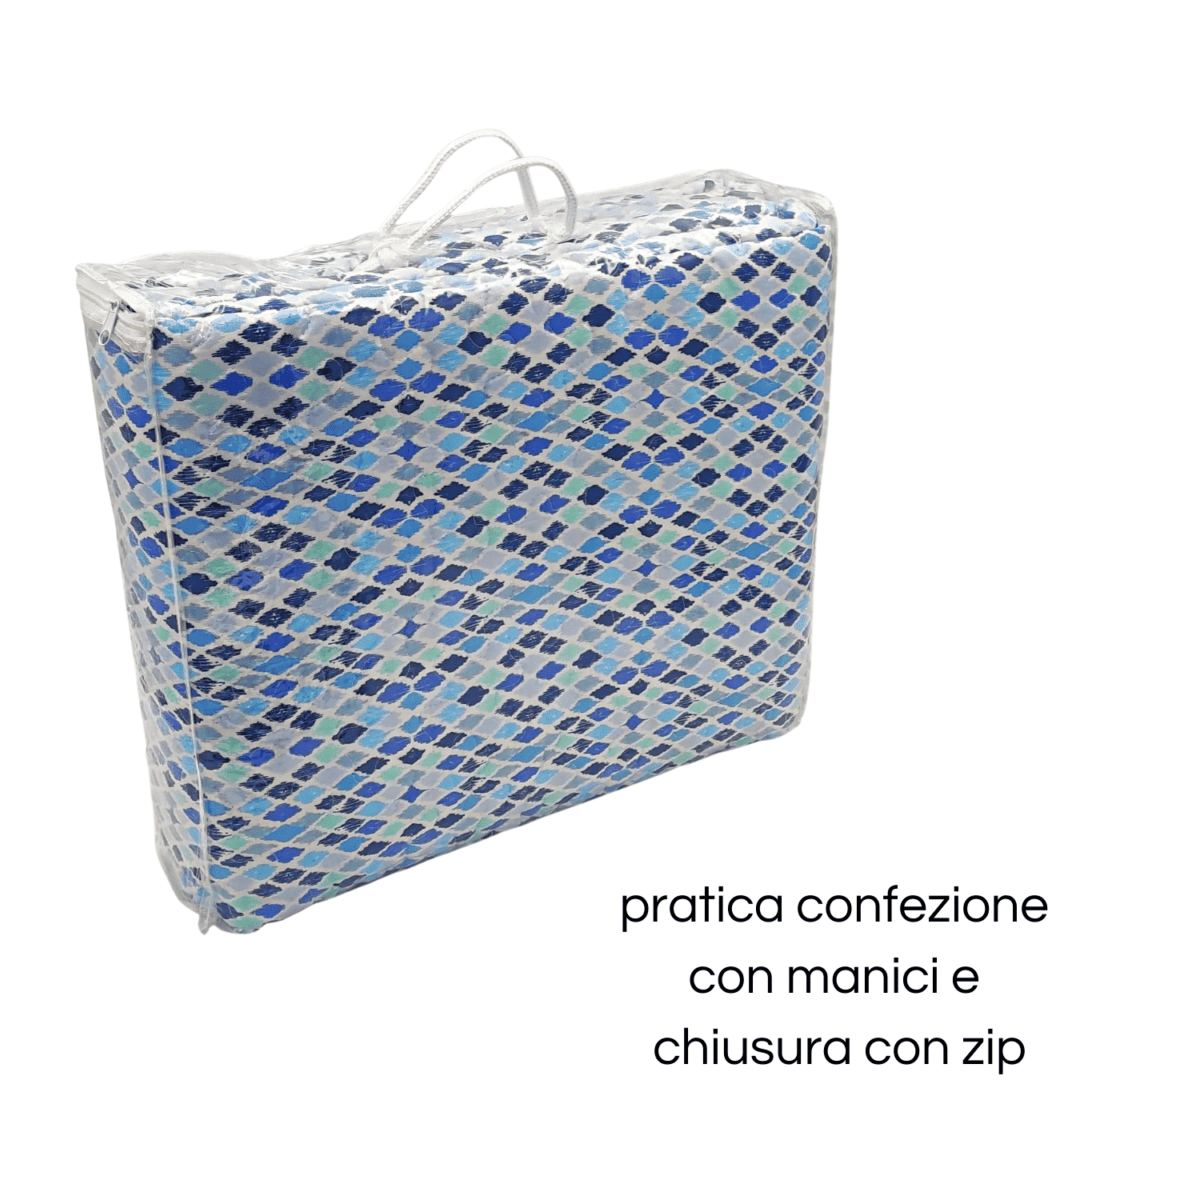 mosaico-azzurro-copriletto-trapuntato-boutis-rombi-geometrico-blu-bianco-microfibra-primaverile-estivo-dettaglio-confezione